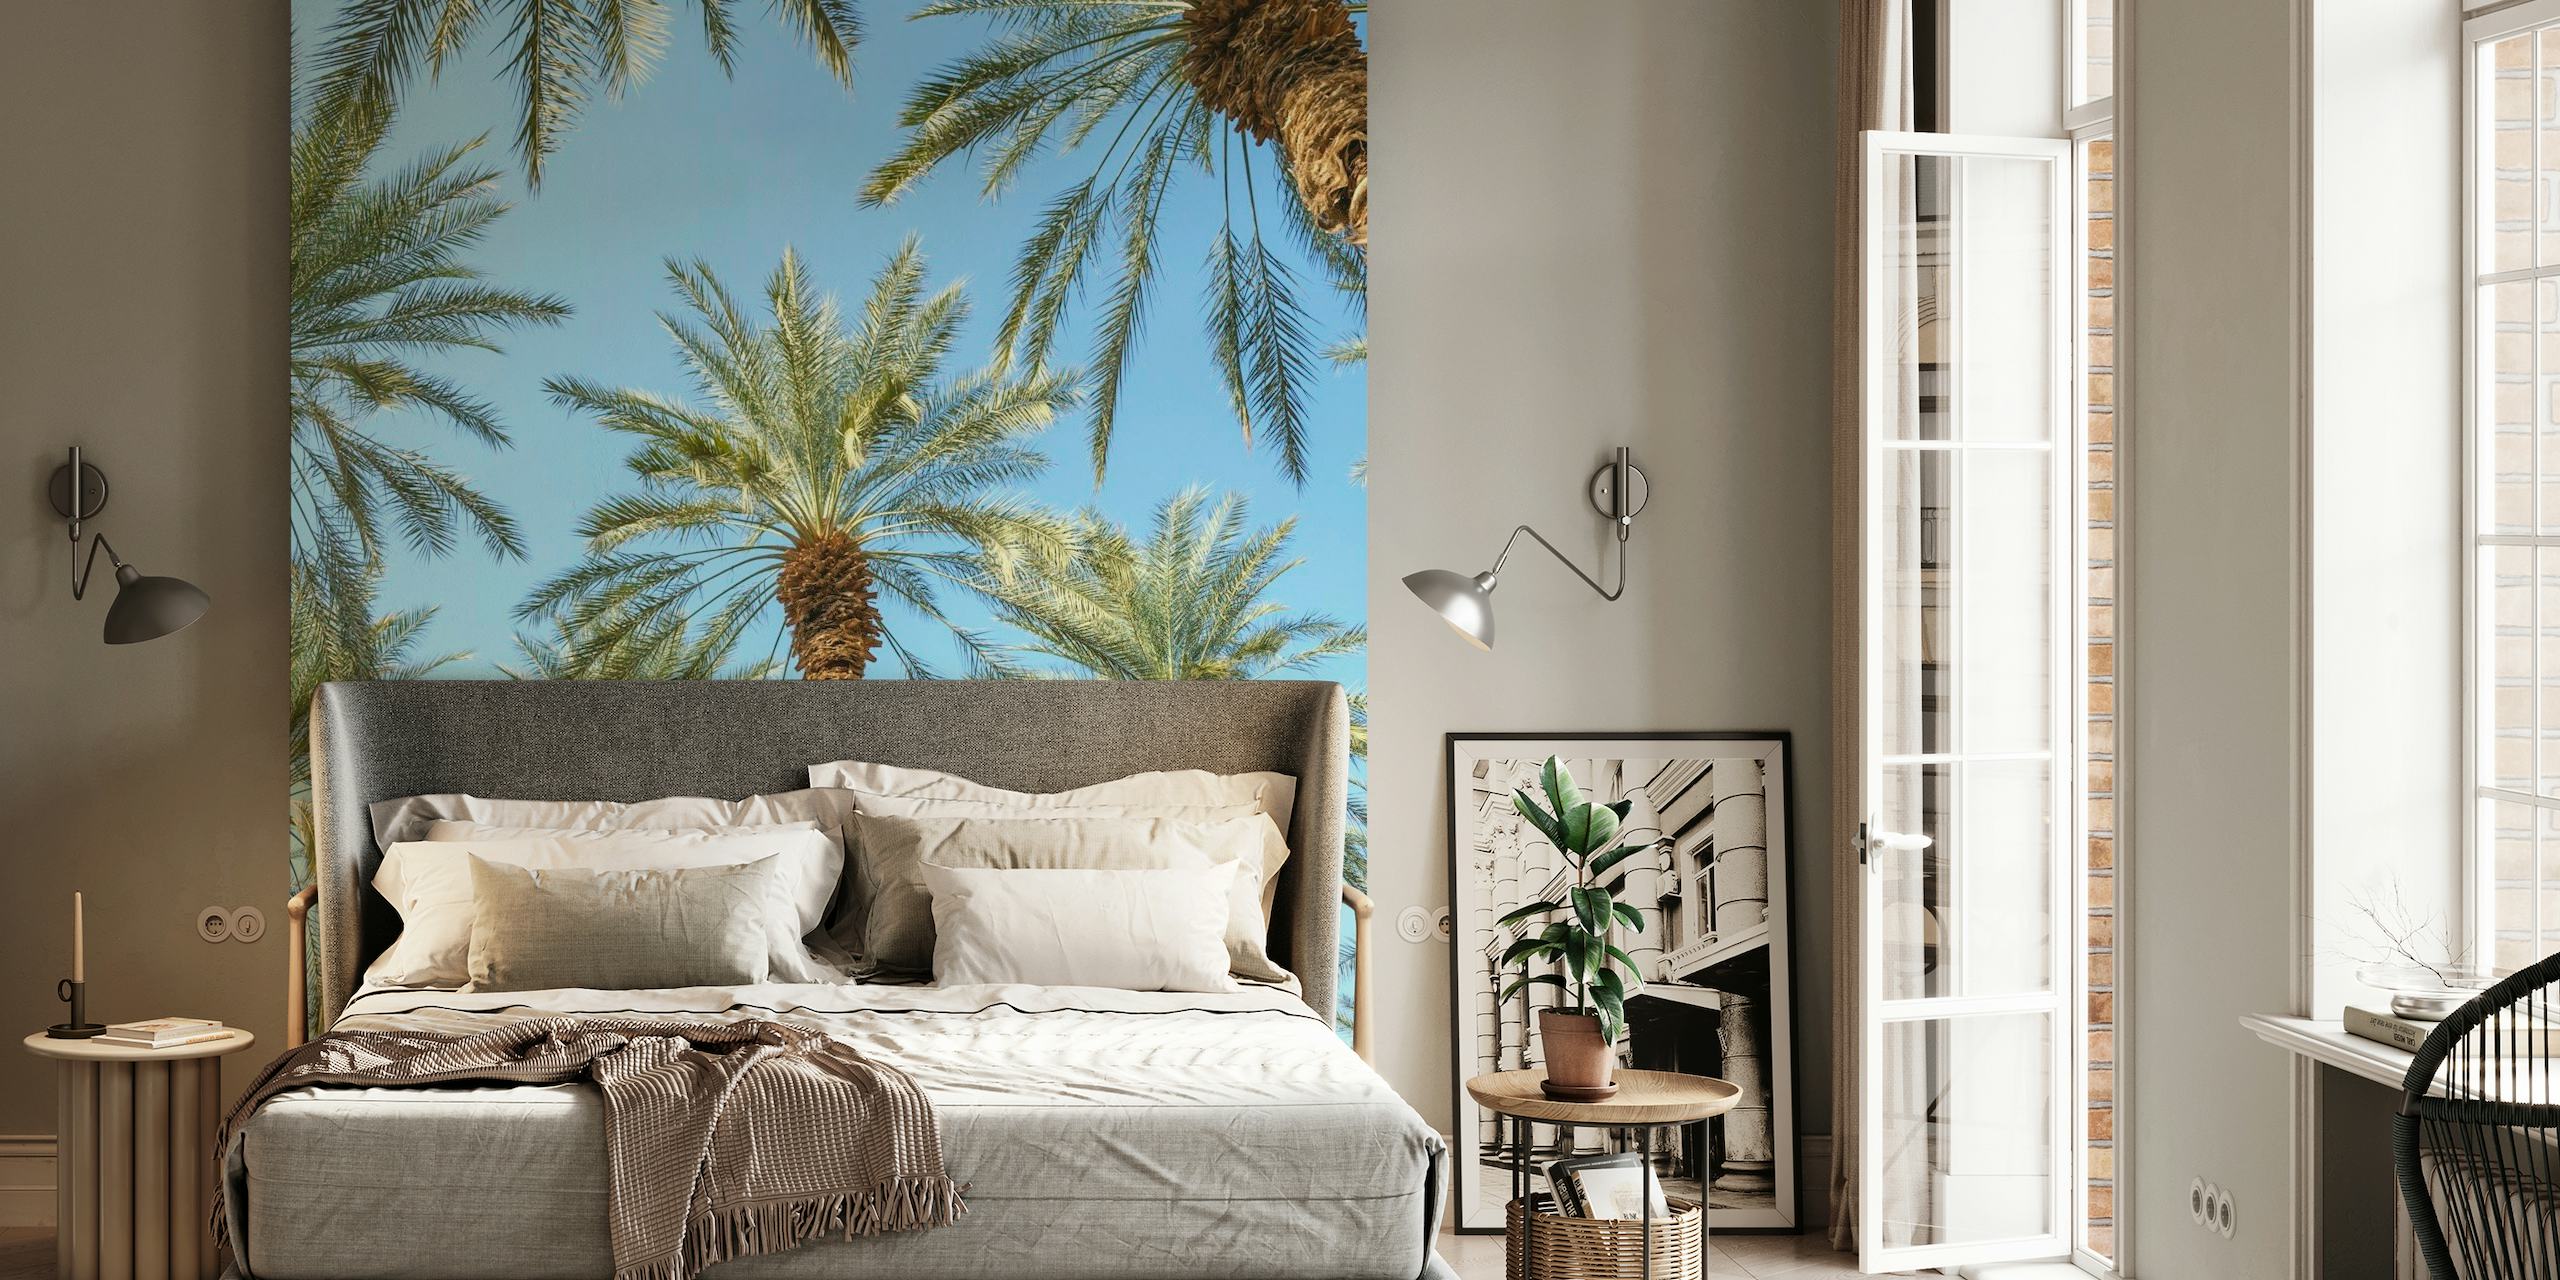 Väggdekor med tropiska palmer för en lugn heminredningsstämning.